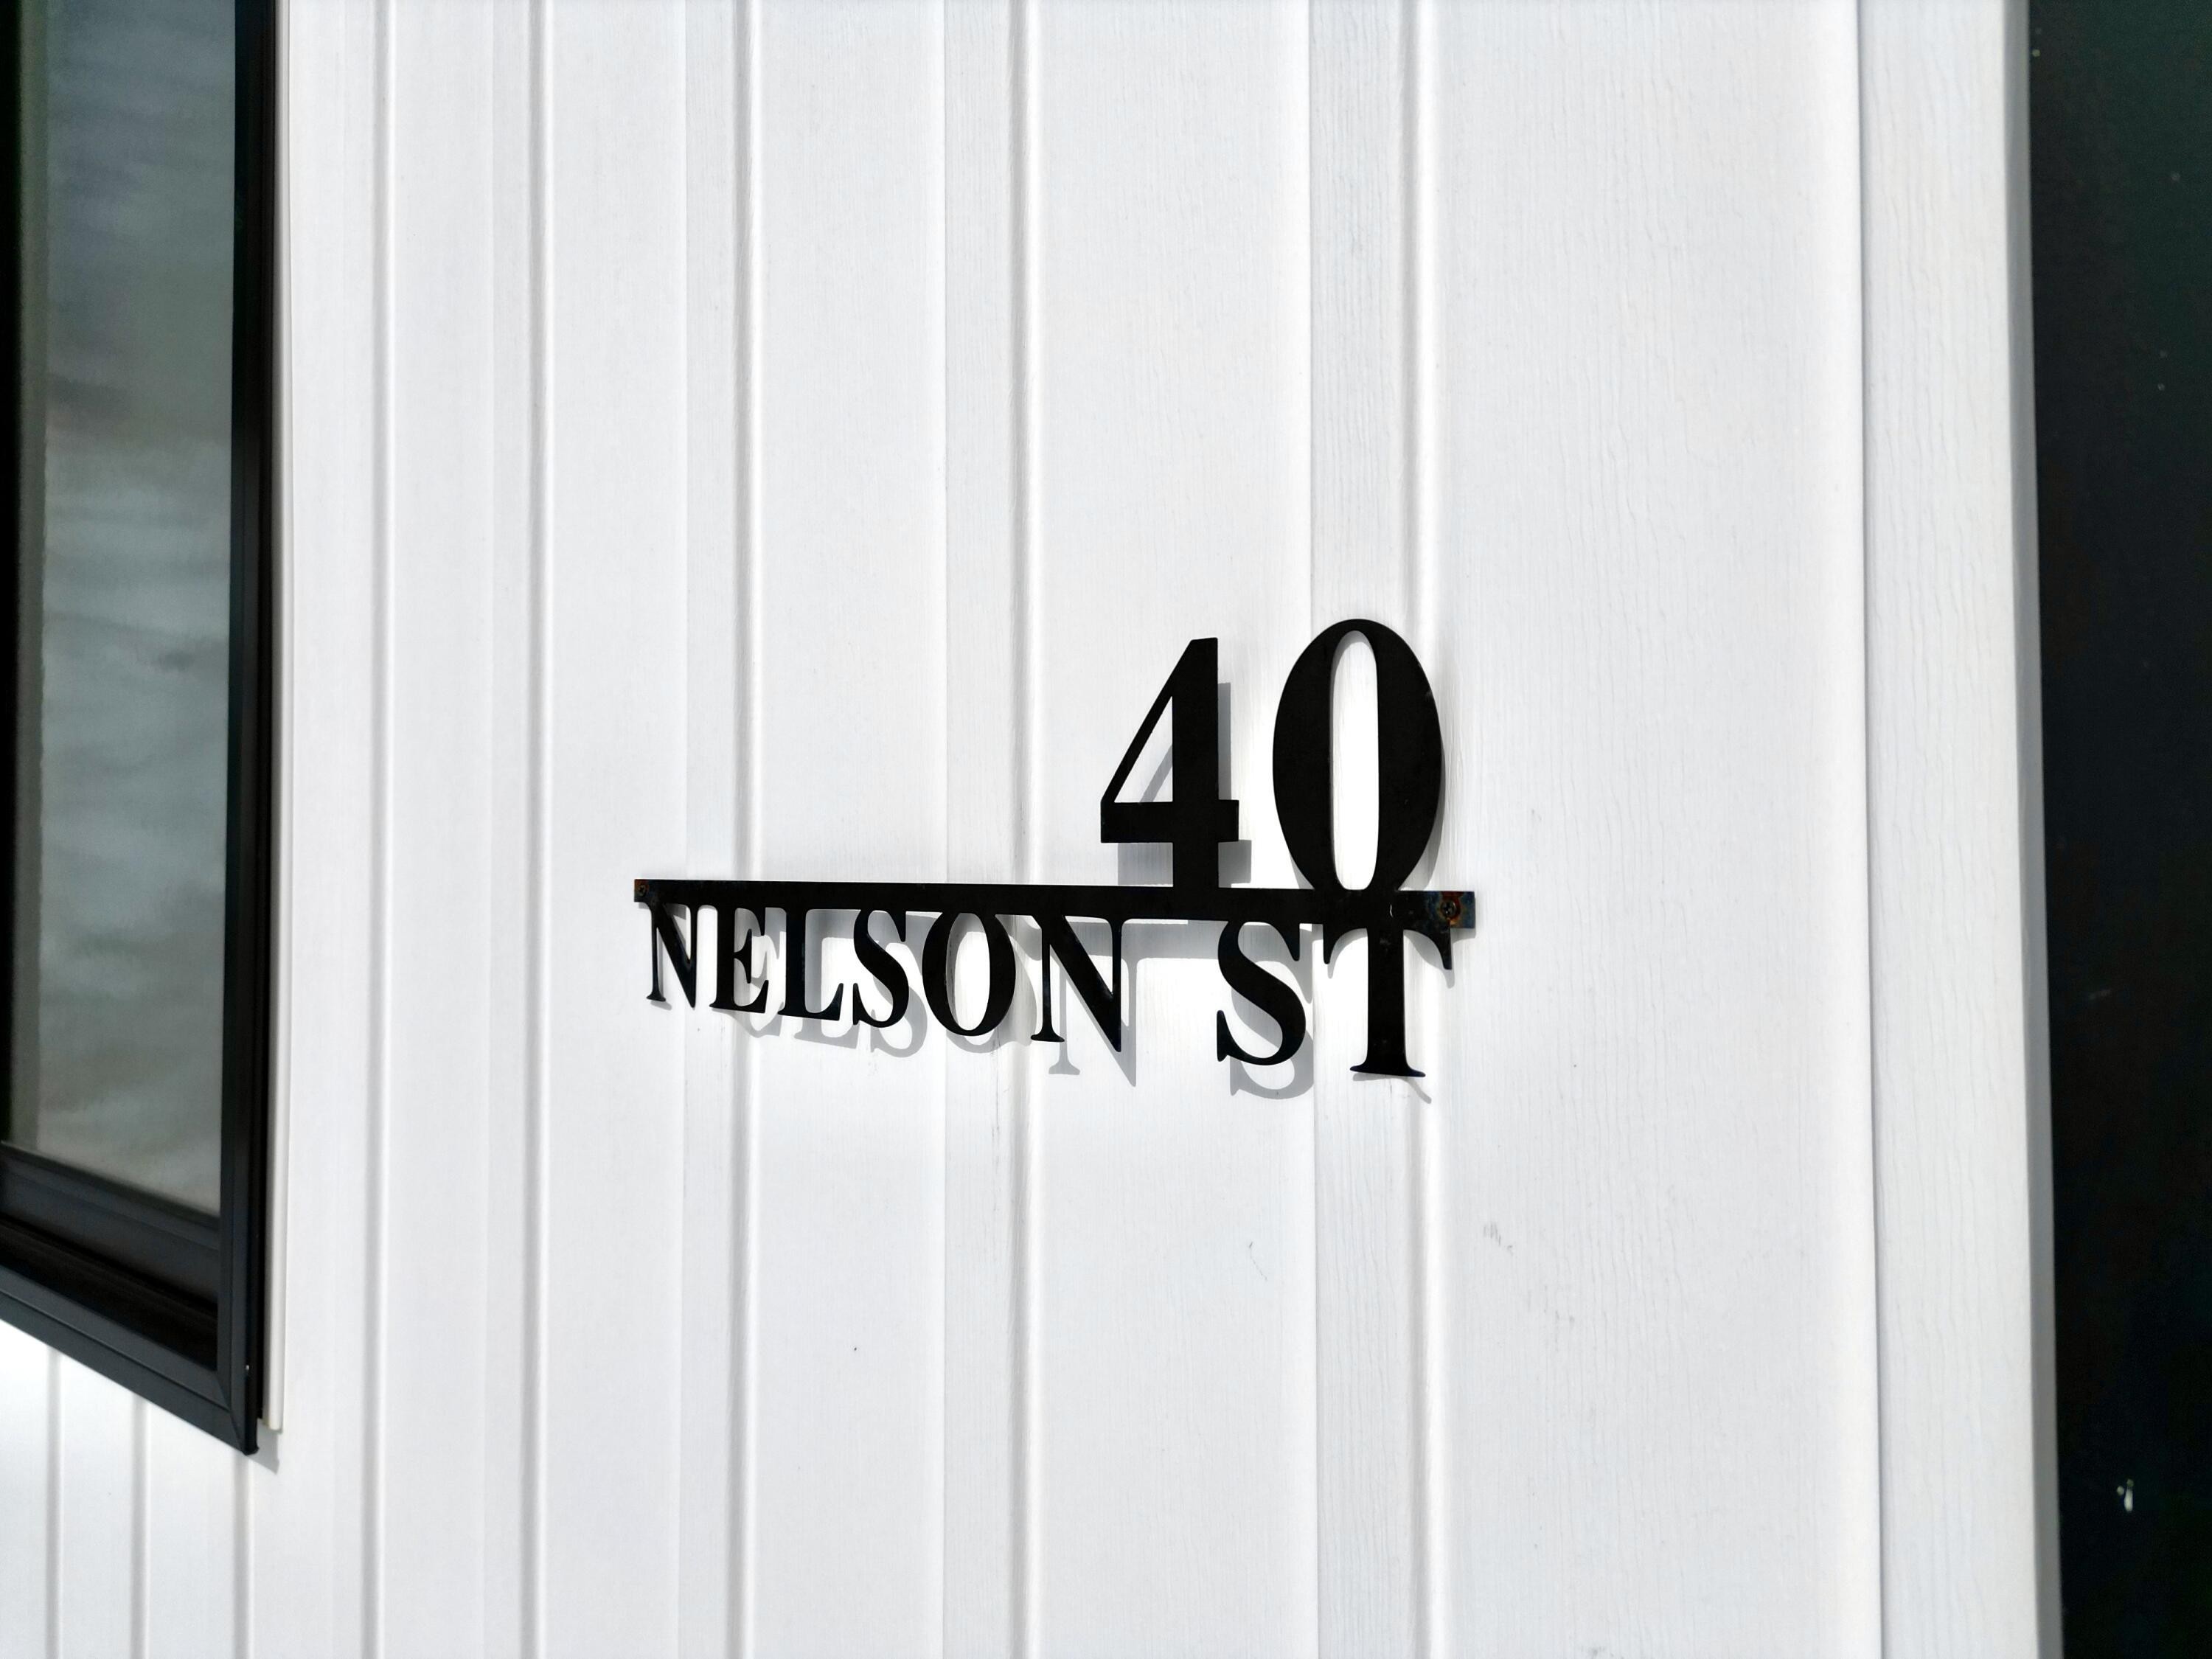 7. 40 Nelson Street